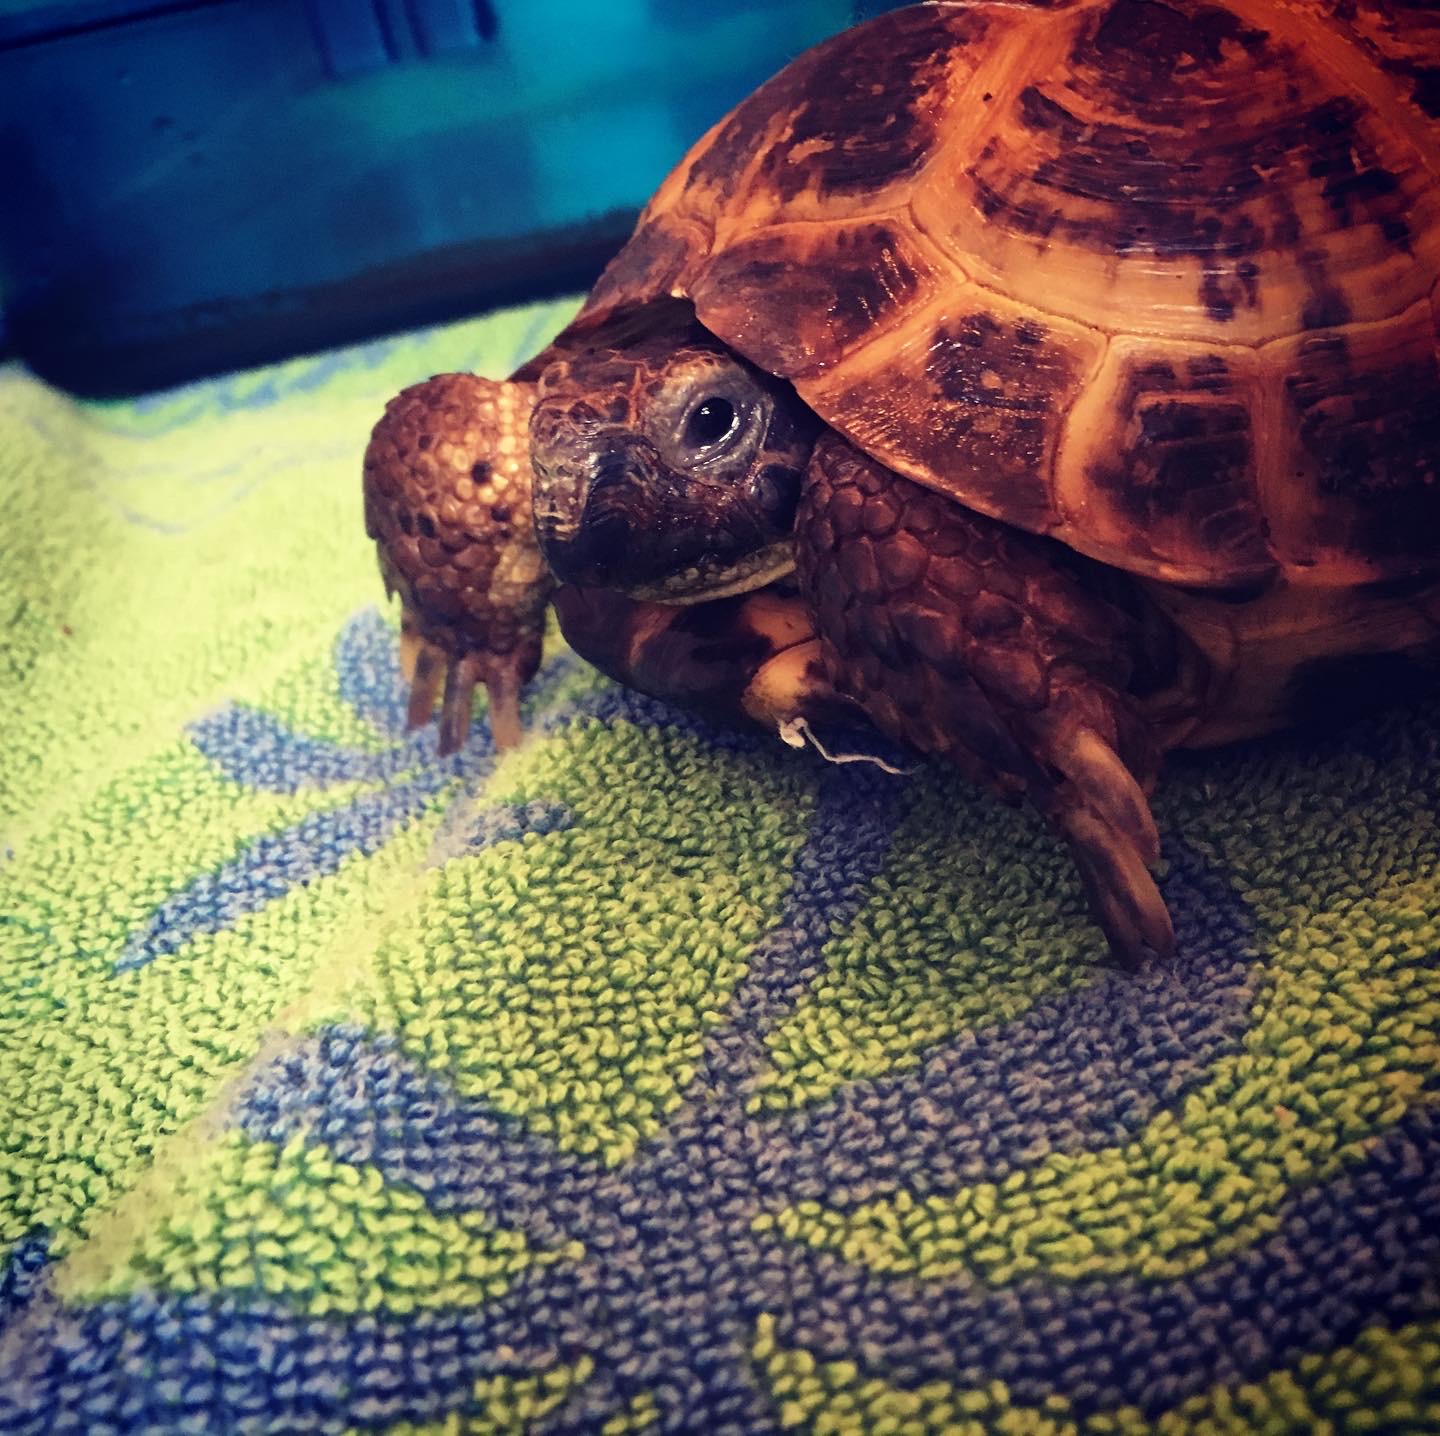 My Russian tortoise Toby